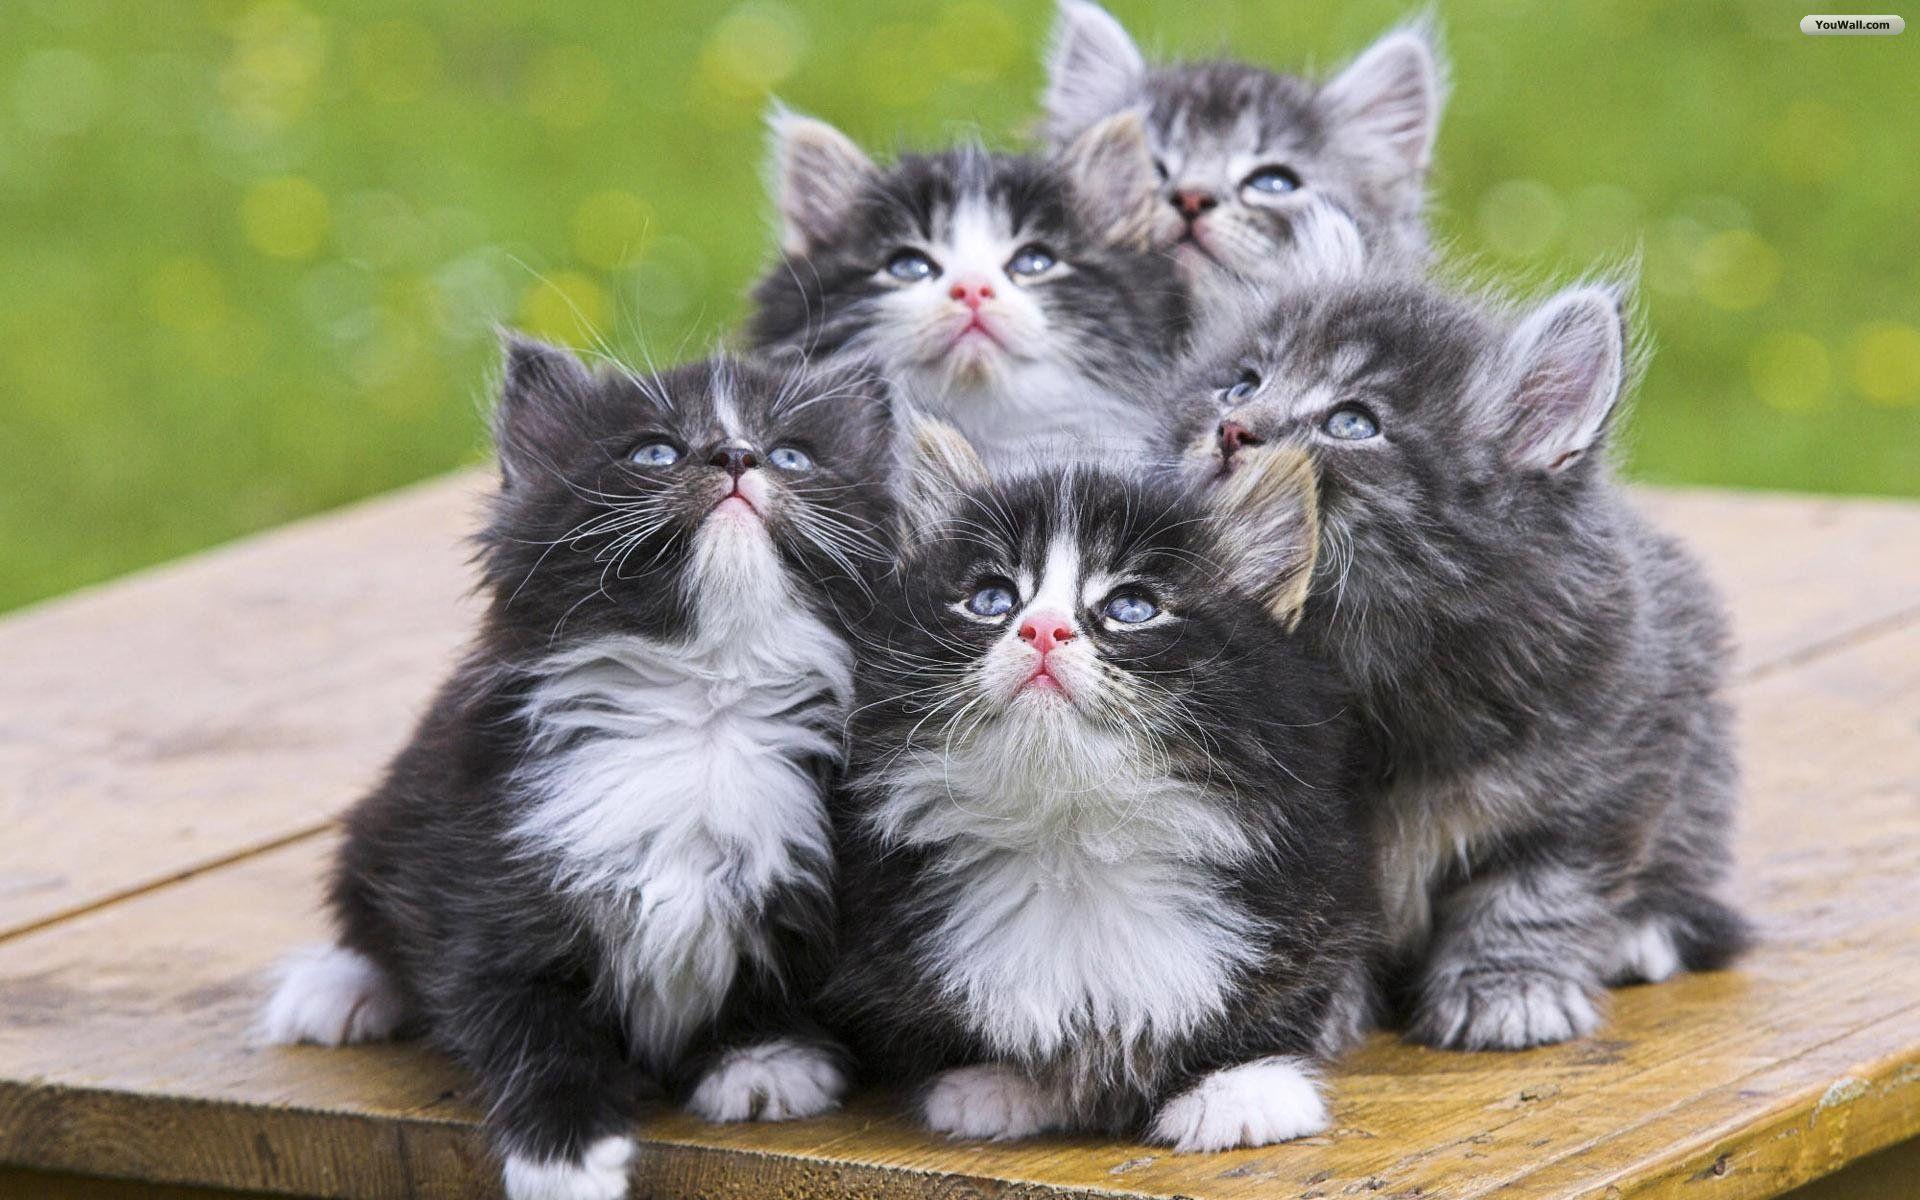 Kitty World: Cute Little Kitten Pictures